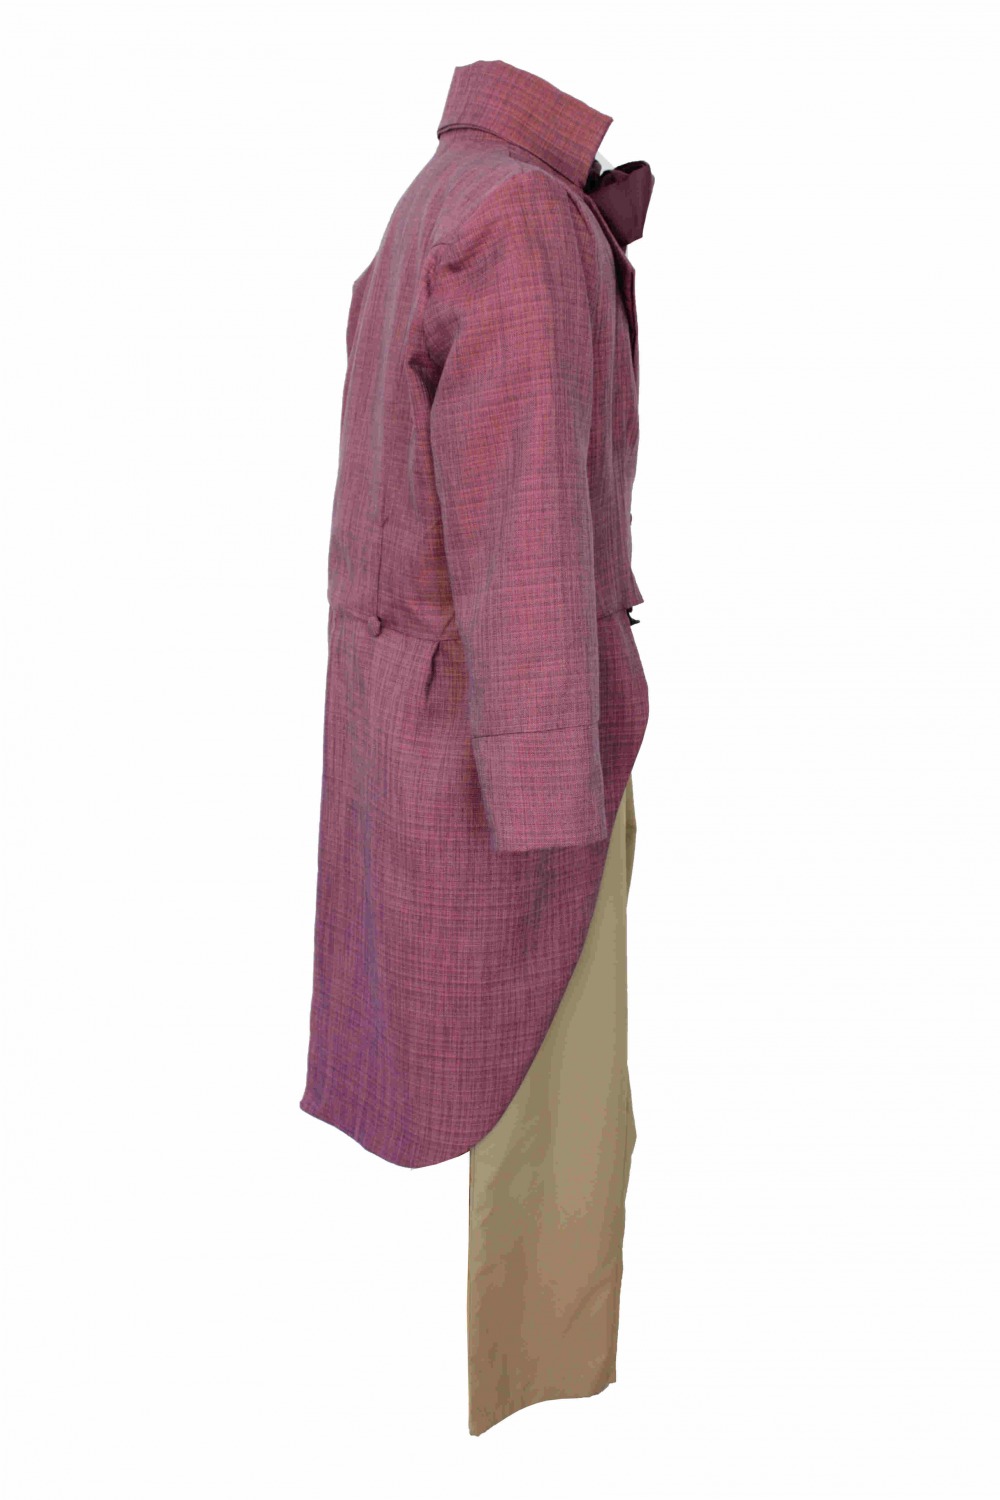 Deluxe Men's Regency Mr. Darcy Victorian Costume Size XL XXL Image